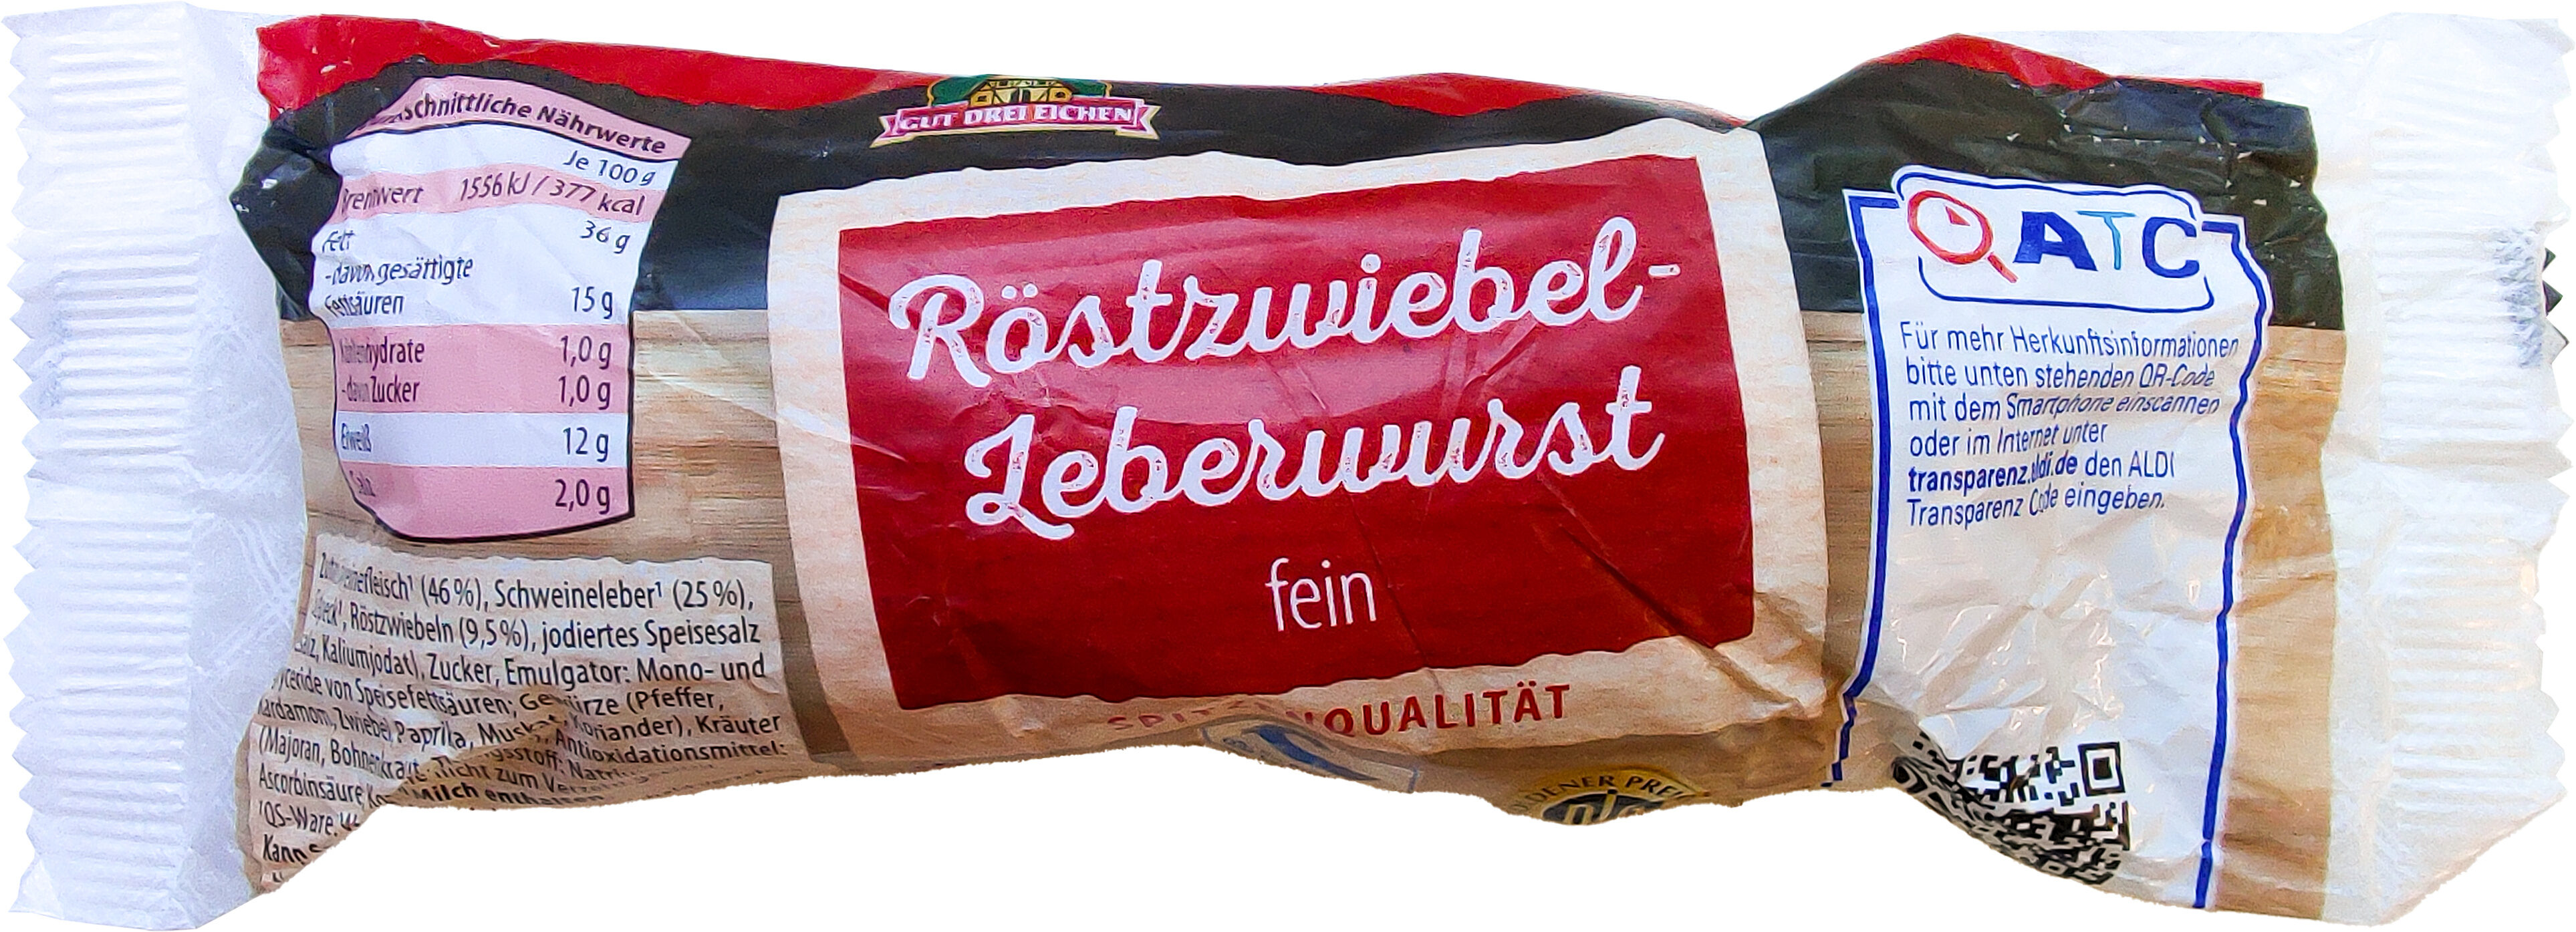 Röstzwiebel Leberwurst fein - Produkt